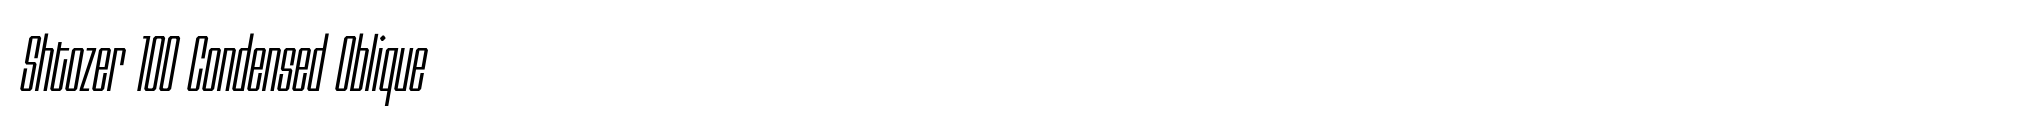 Shtozer 100 Condensed Oblique image